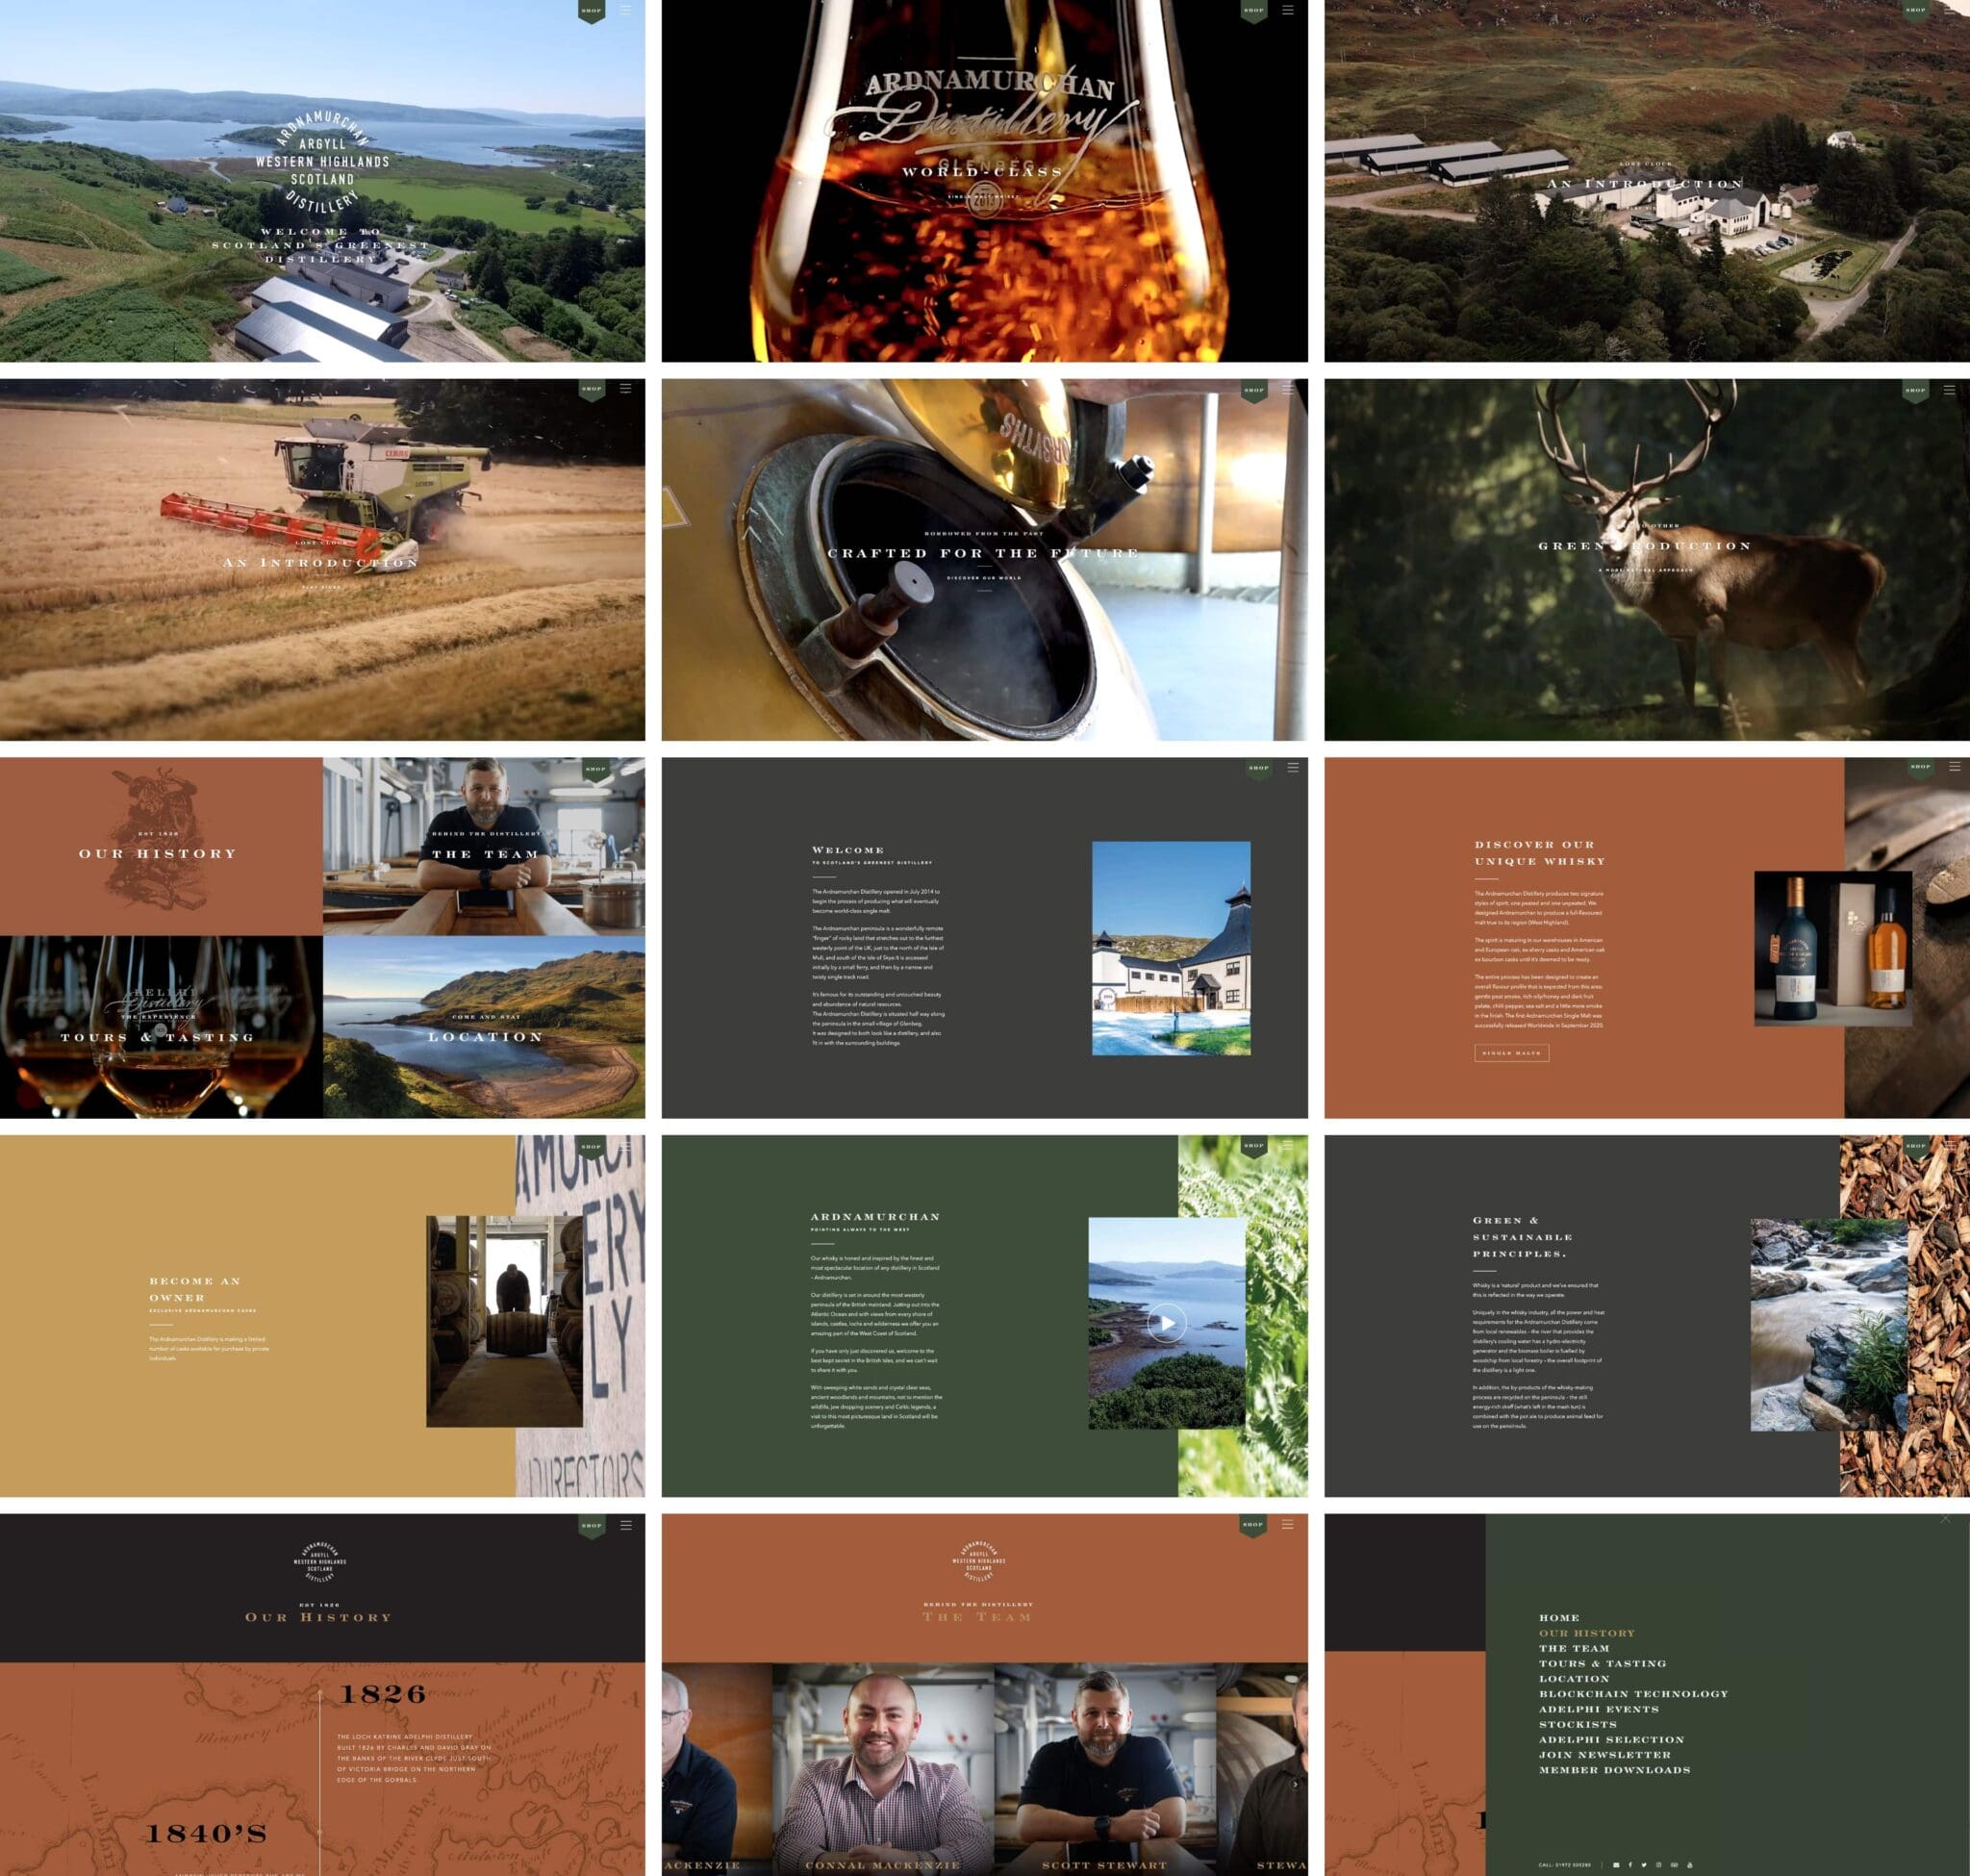 Ardnamurchan Distillery website design by Bluestone98 the UK's leading digital agency Harrogate